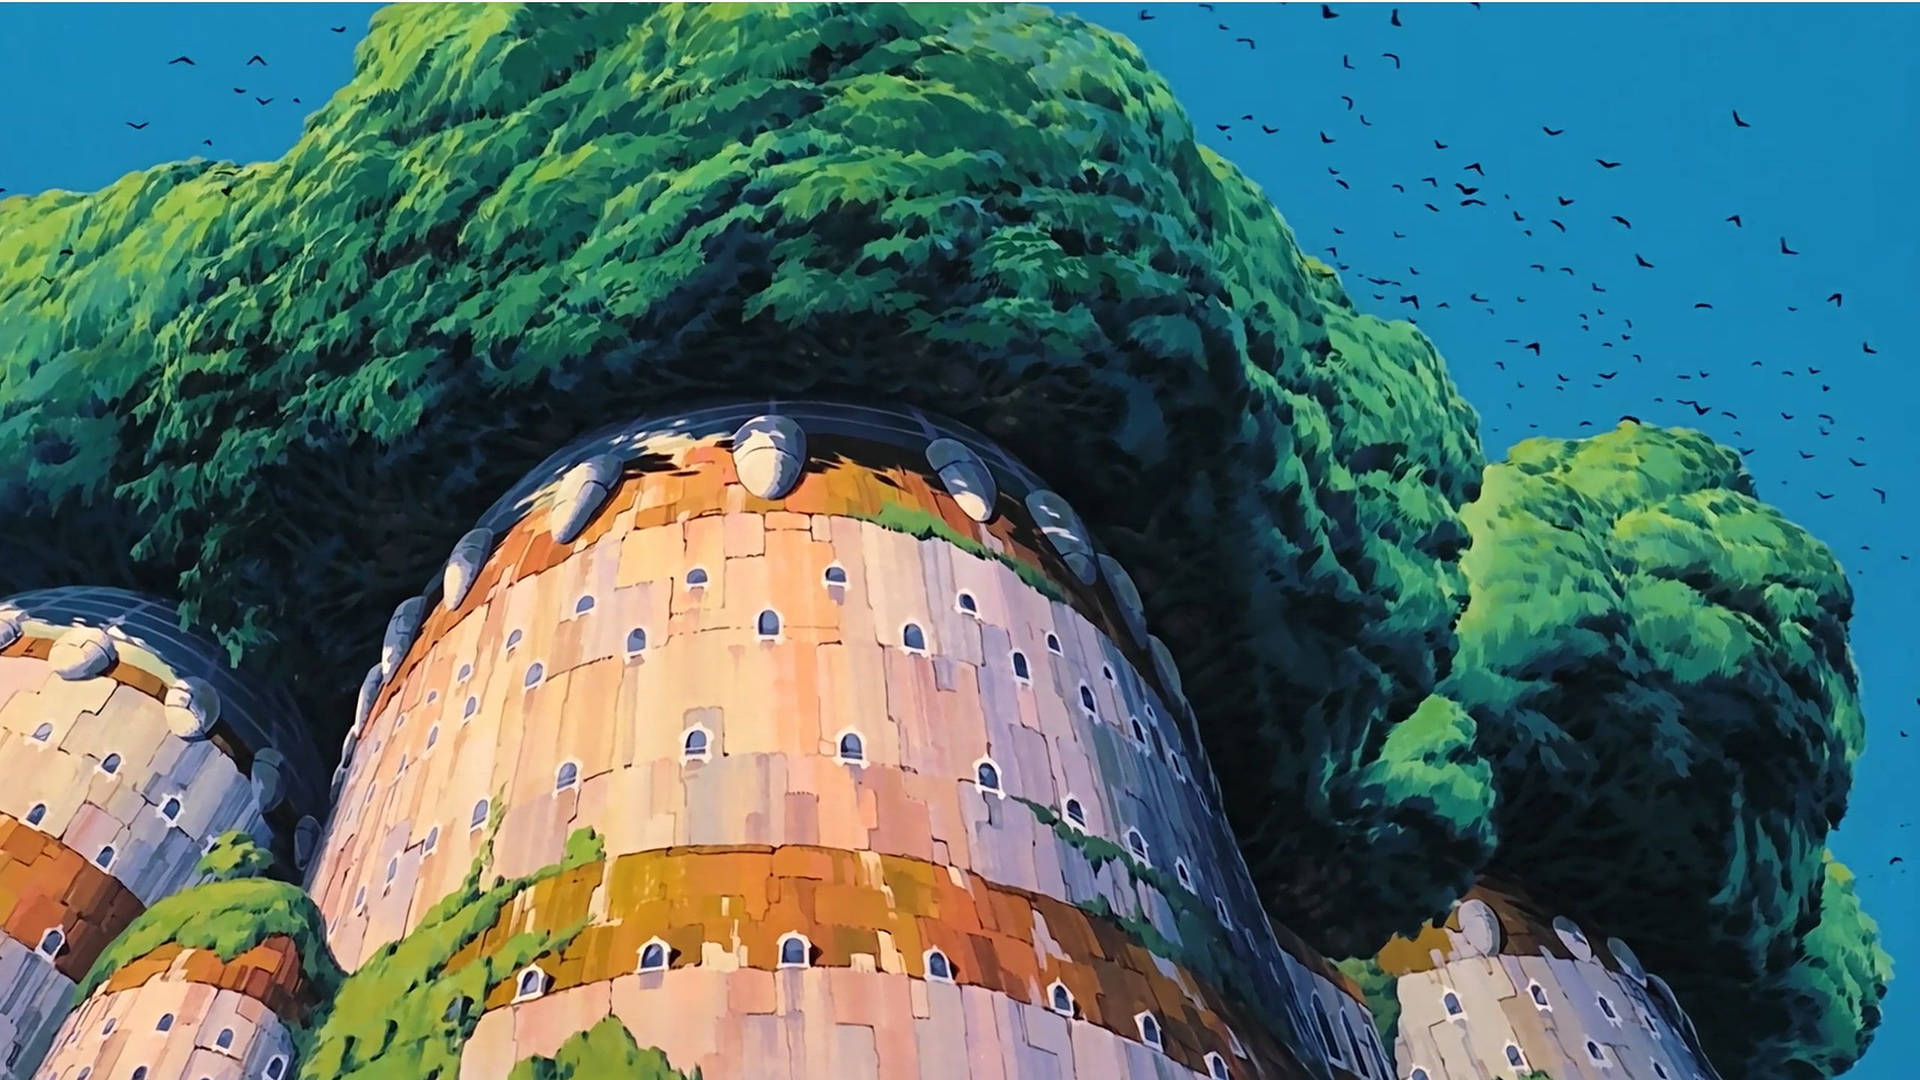 Laputa Castle Studio Ghibli